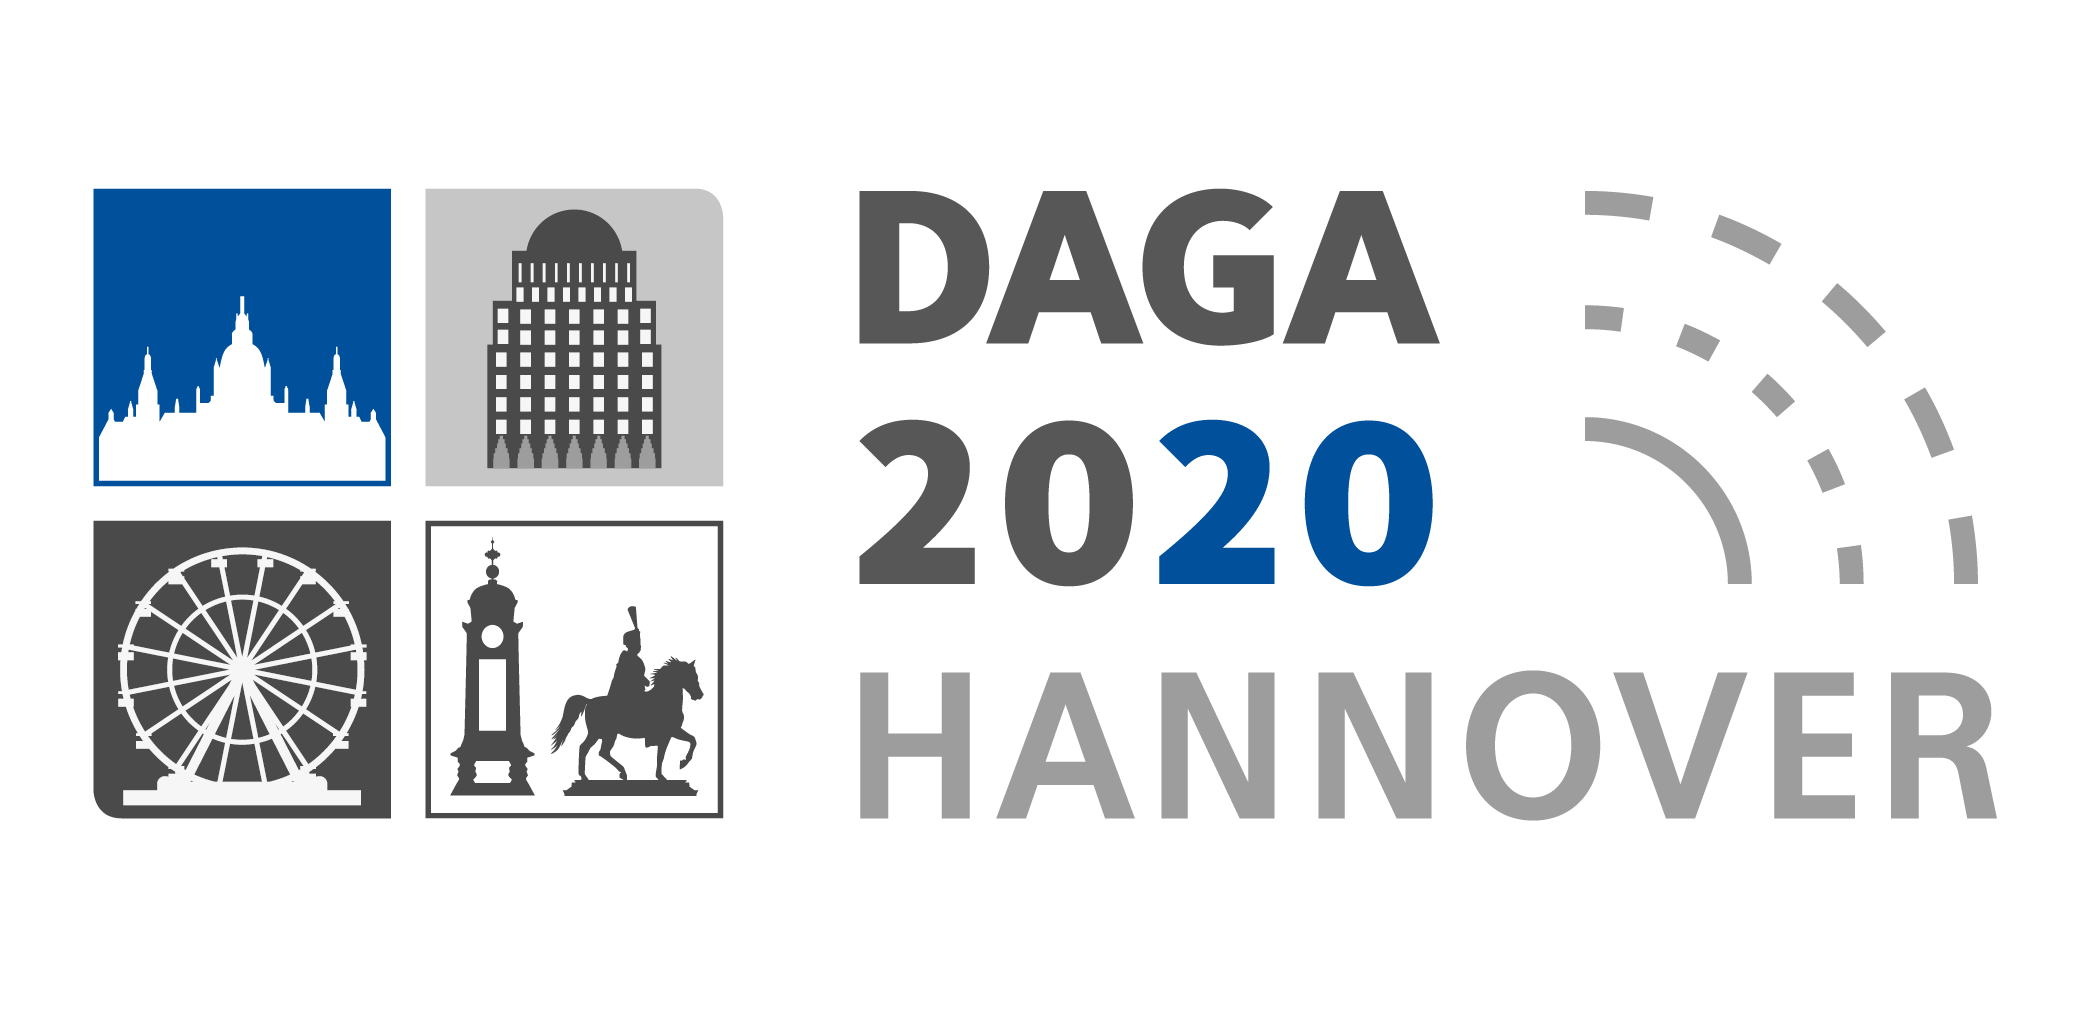 Cancelled: DAGA 2020